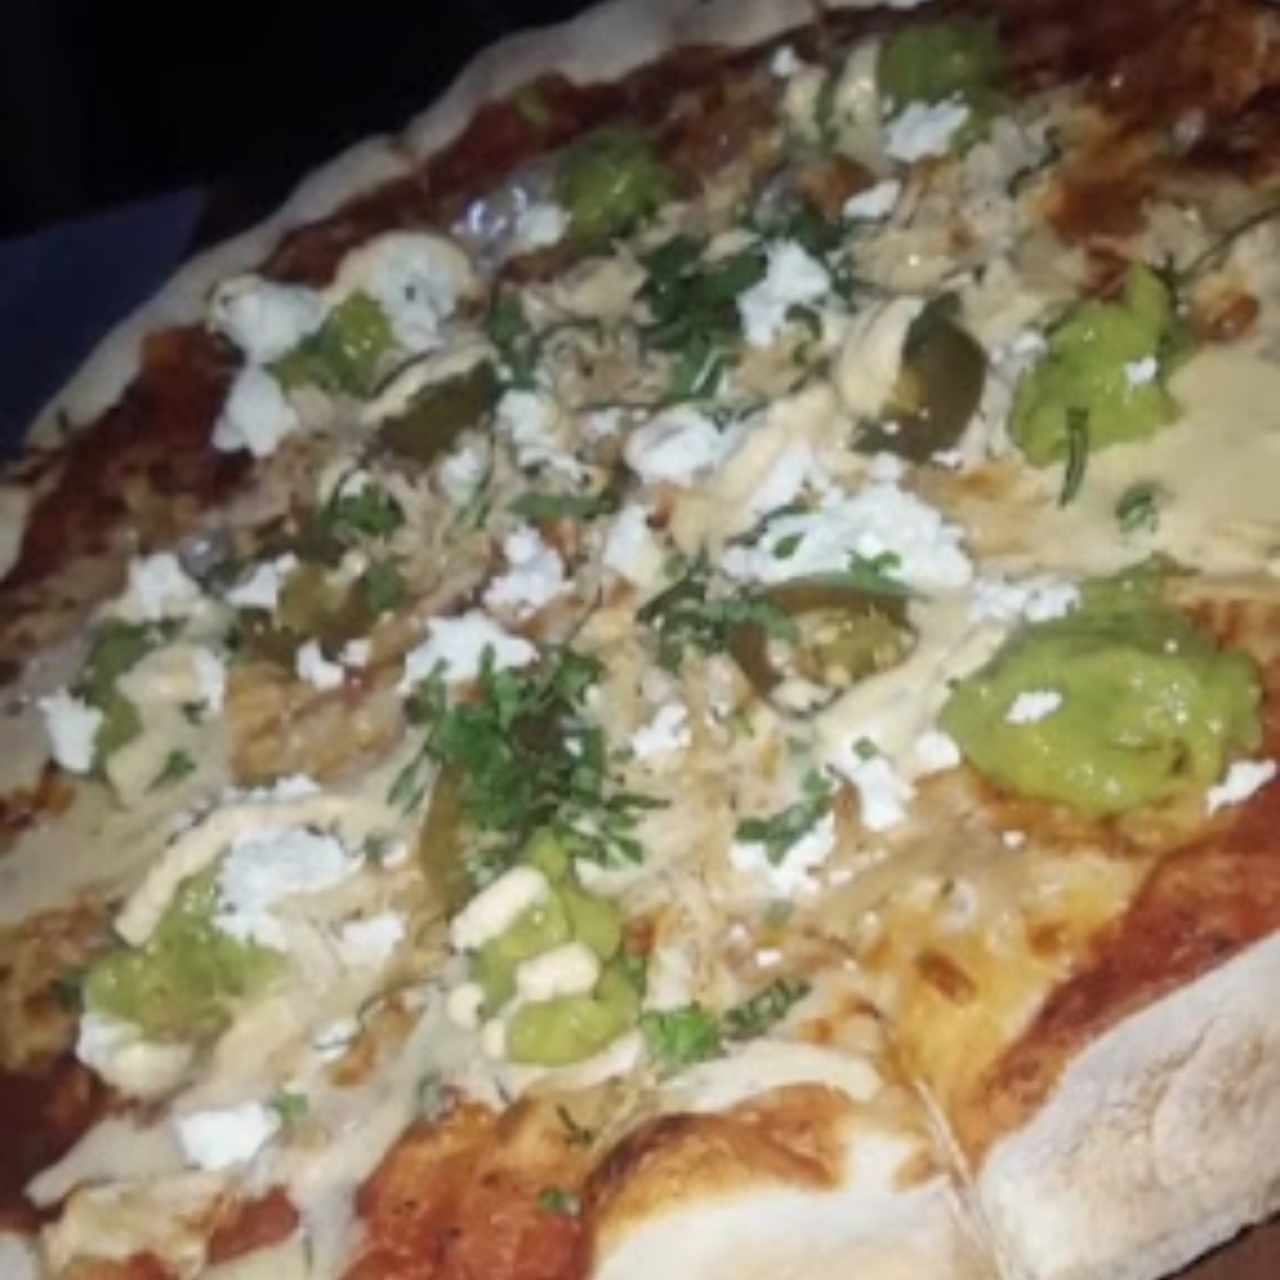 pizza mexicana 